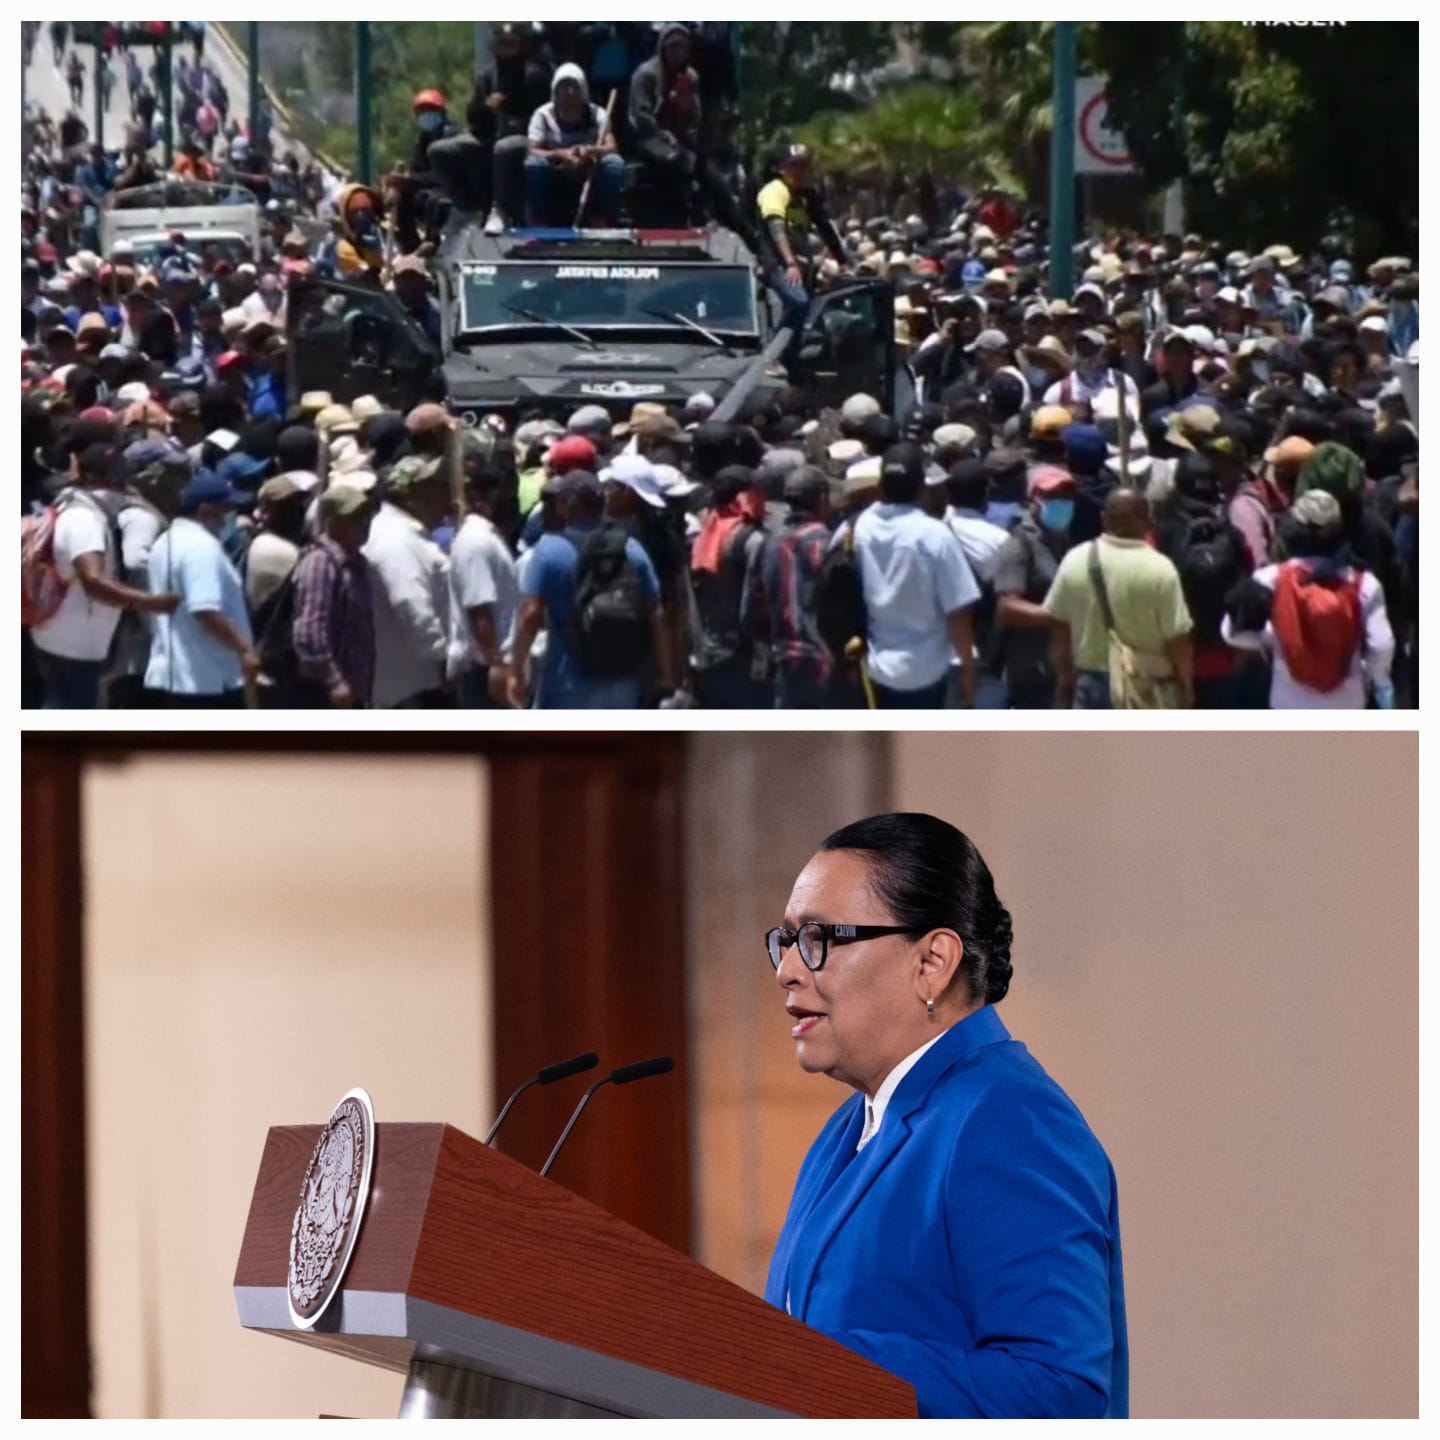 Liberar a dos integrantes de “Los Ardillos”, es la cusa de protestas violentas en Chilpancingo